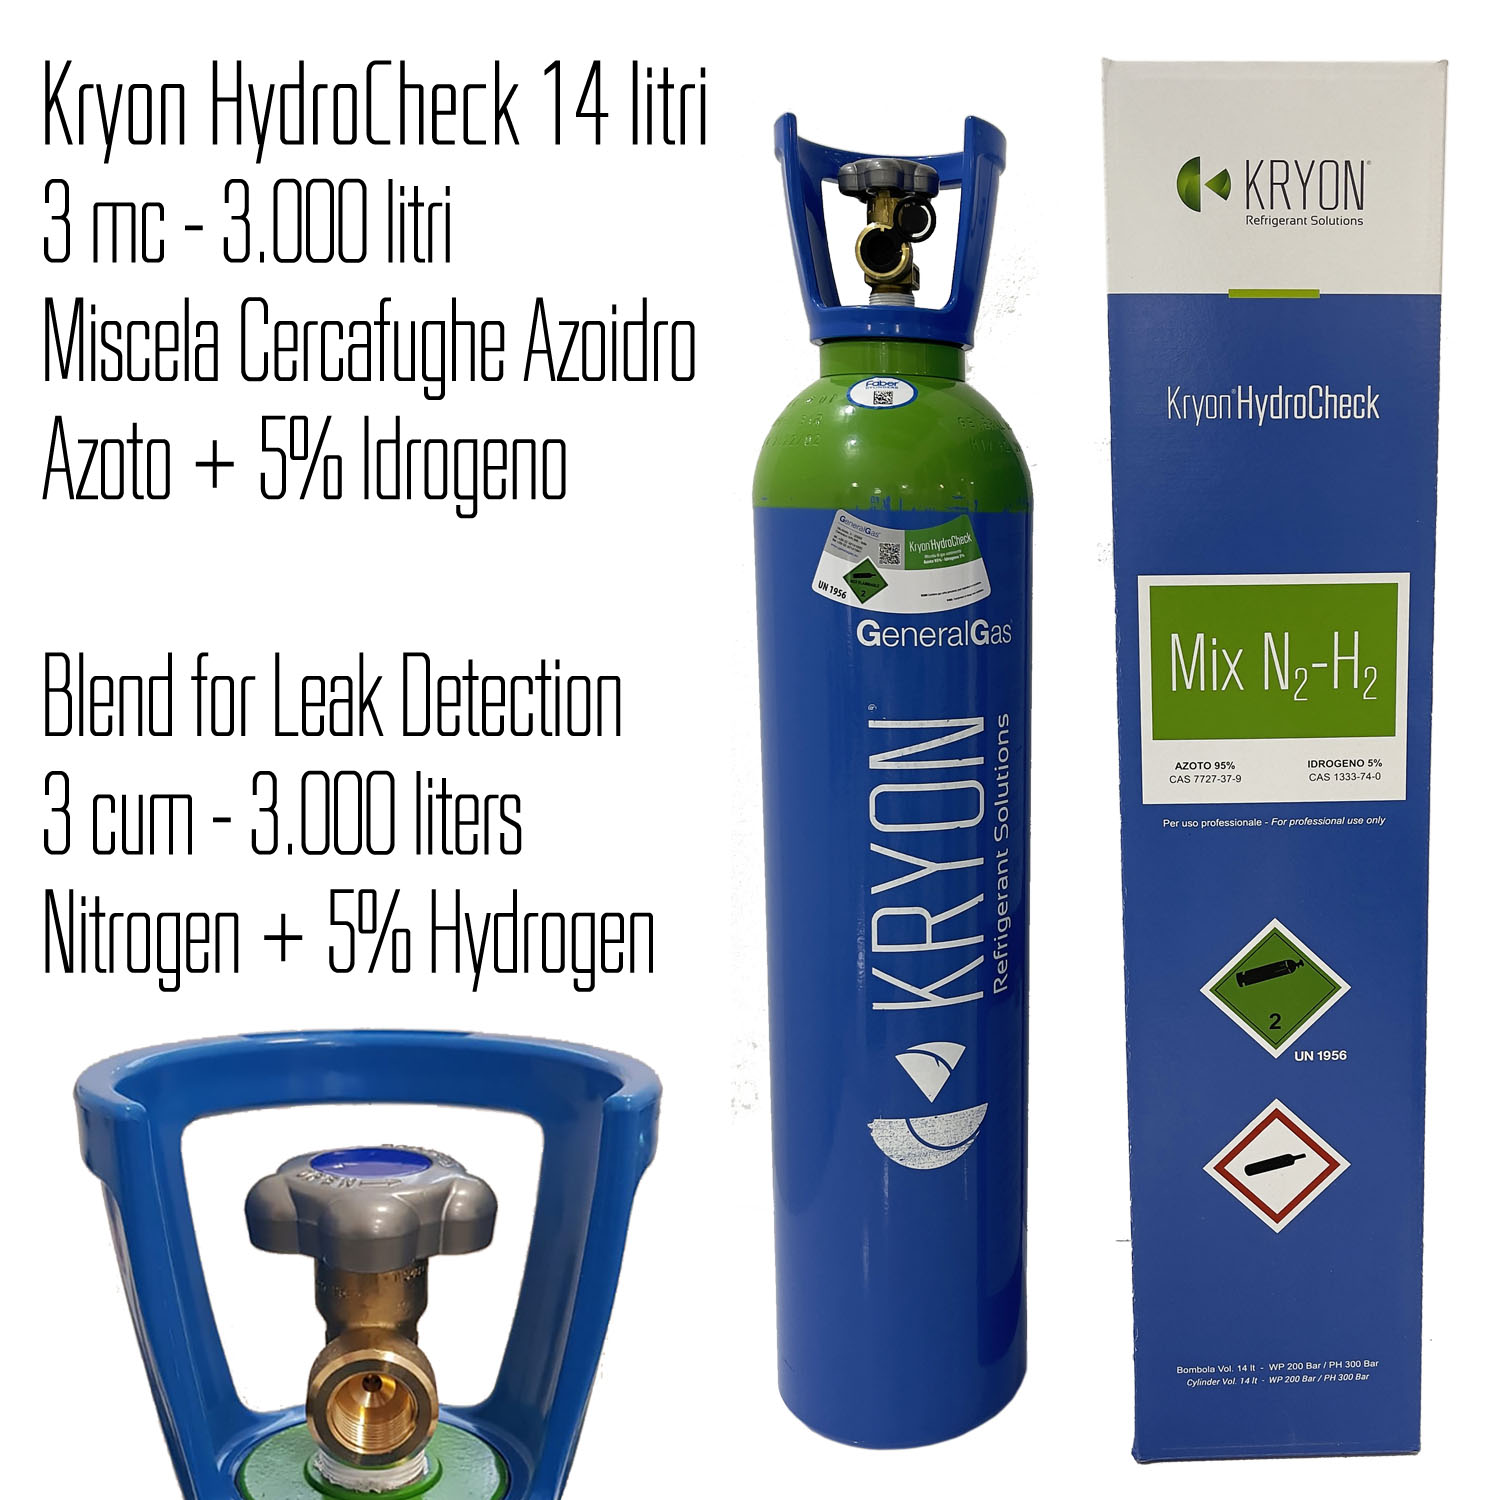 Kryon® HydroCheck 3000 lt - bombola azoto 5% idrogeno (miscela cercafughe azoidro) capacità 14 litri 200 bar - caricata con 3 mc di miscela, completa di valvola - Foto 1 